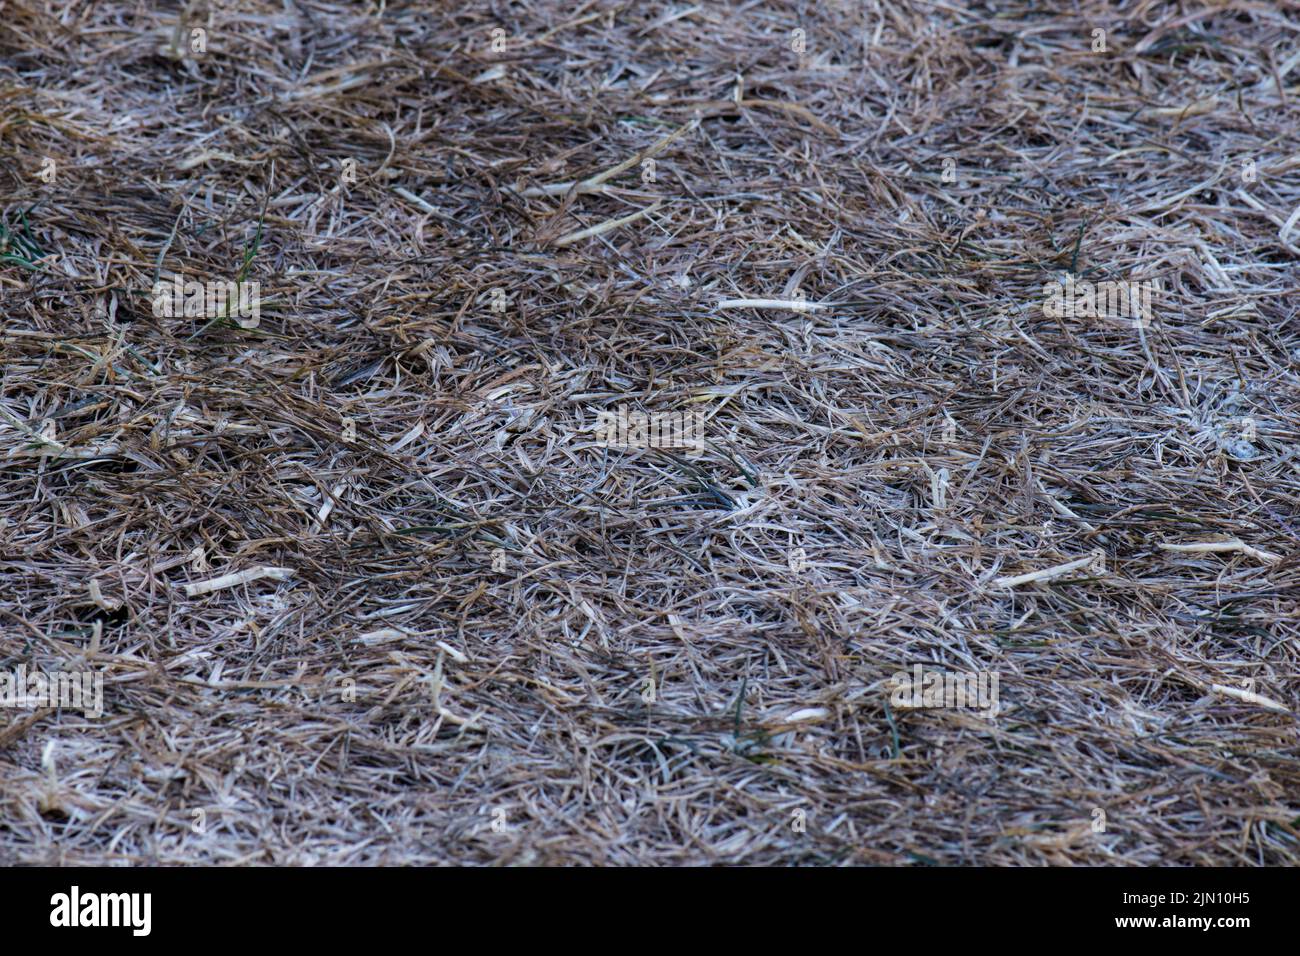 Gros plan de l'herbe brune ou blonde stressée et morte d'une pelouse après une sécheresse avec un peu de croissance verte montrant. Banque D'Images